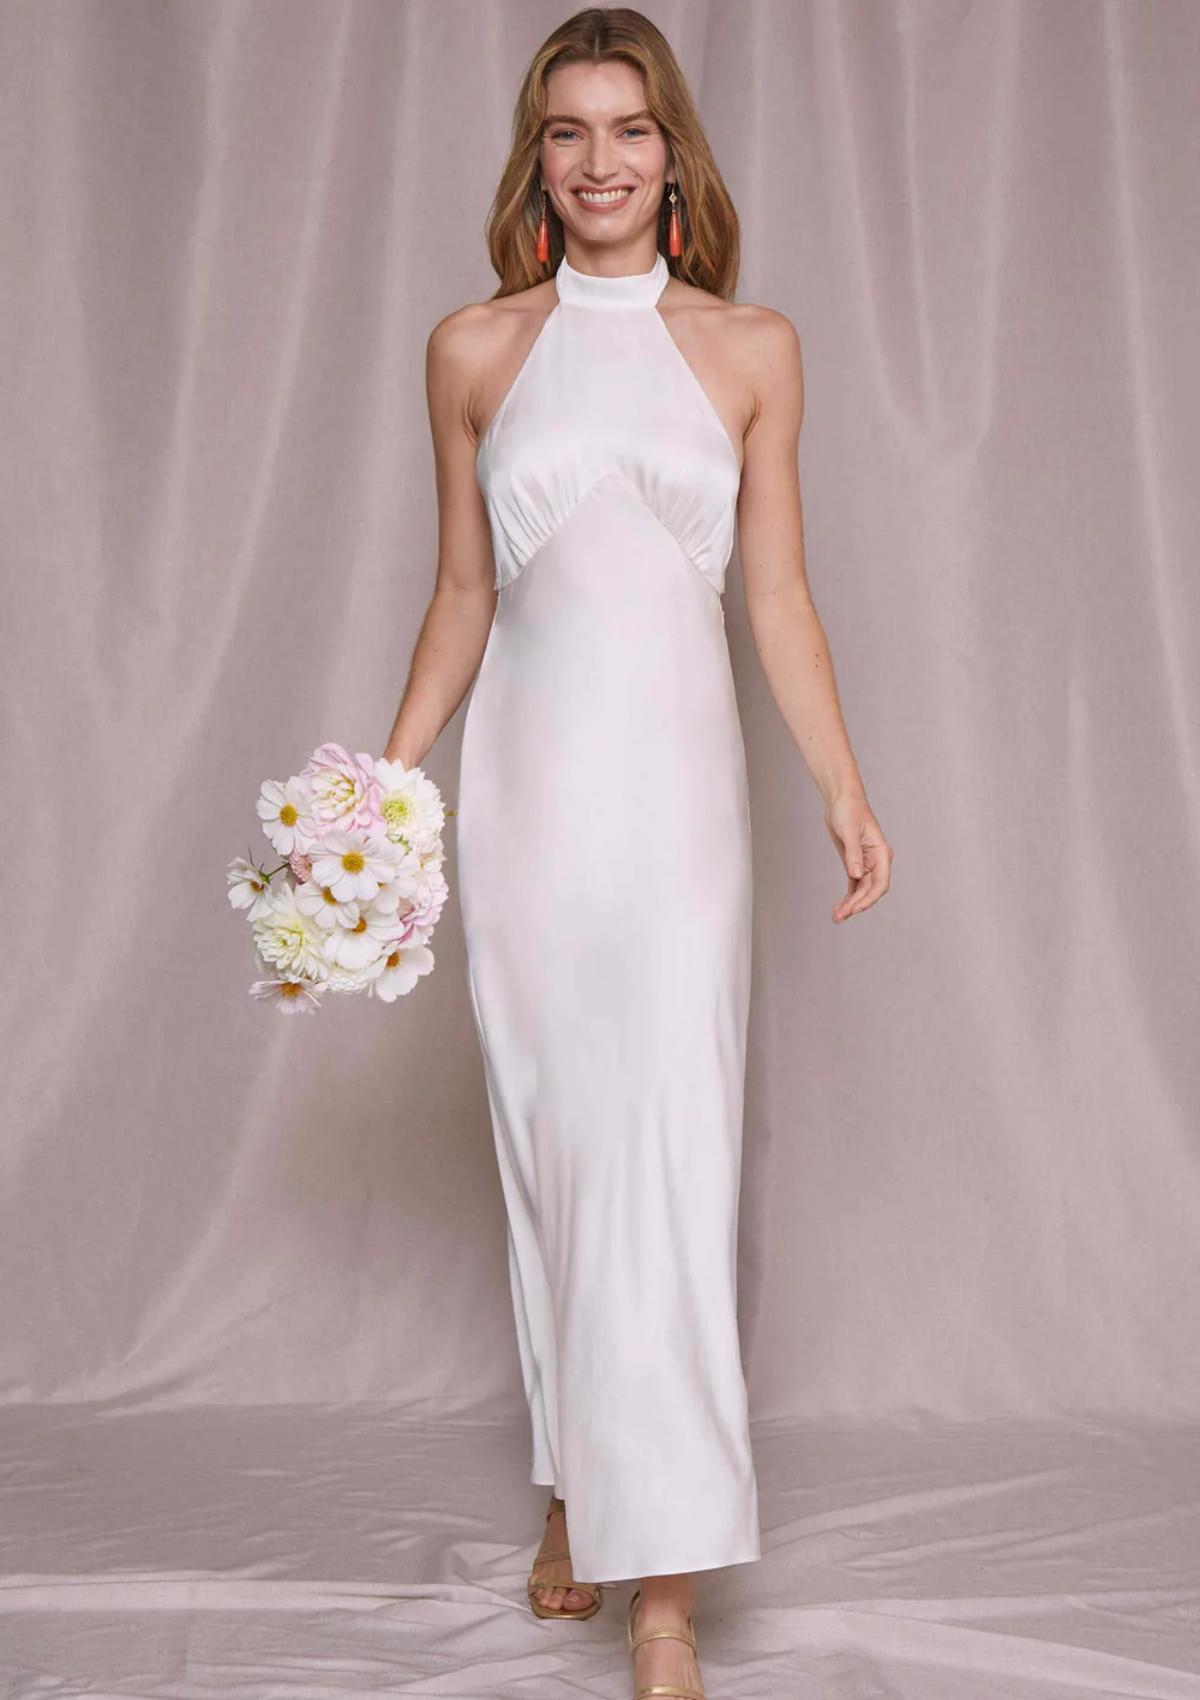 Bridal Gowns Under $500 | Wedding Fashion Style